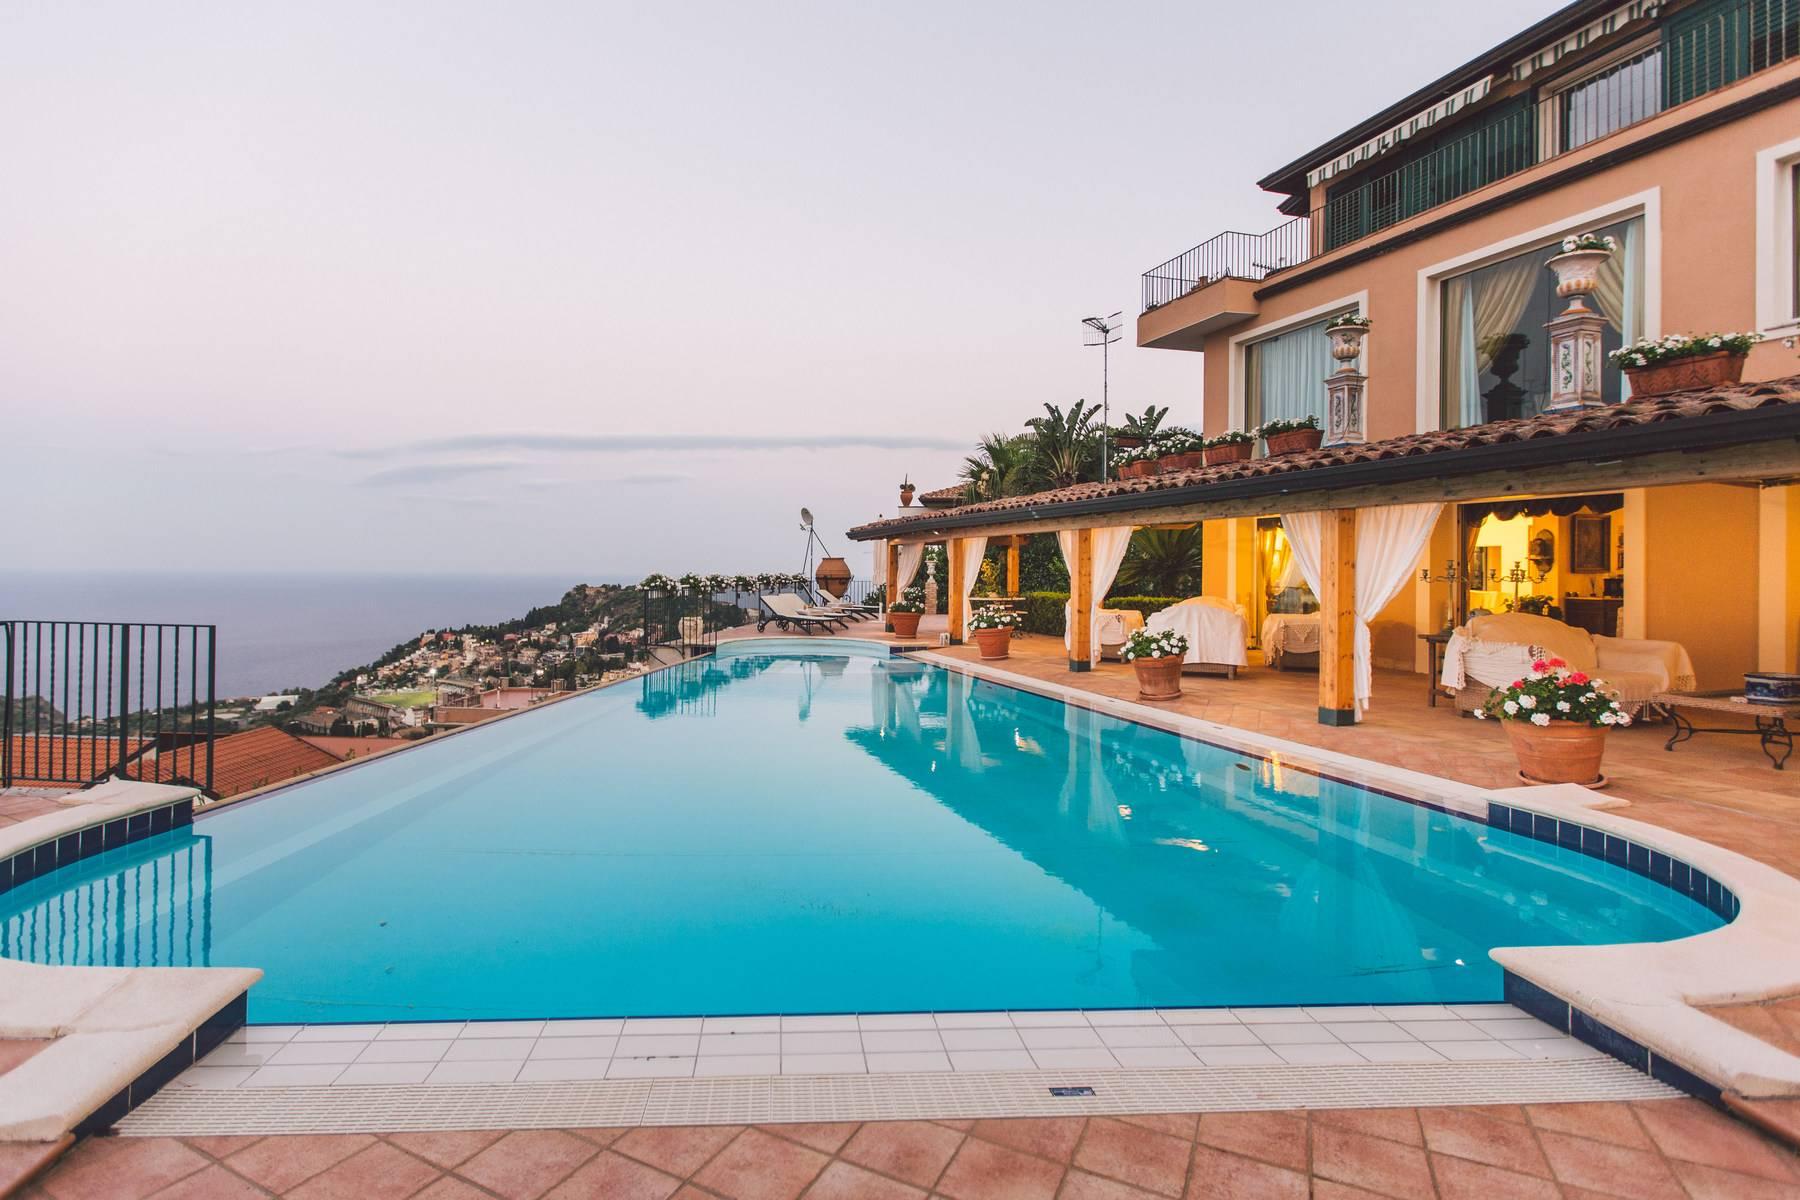 Villa with swimming pool in Taormina - 6